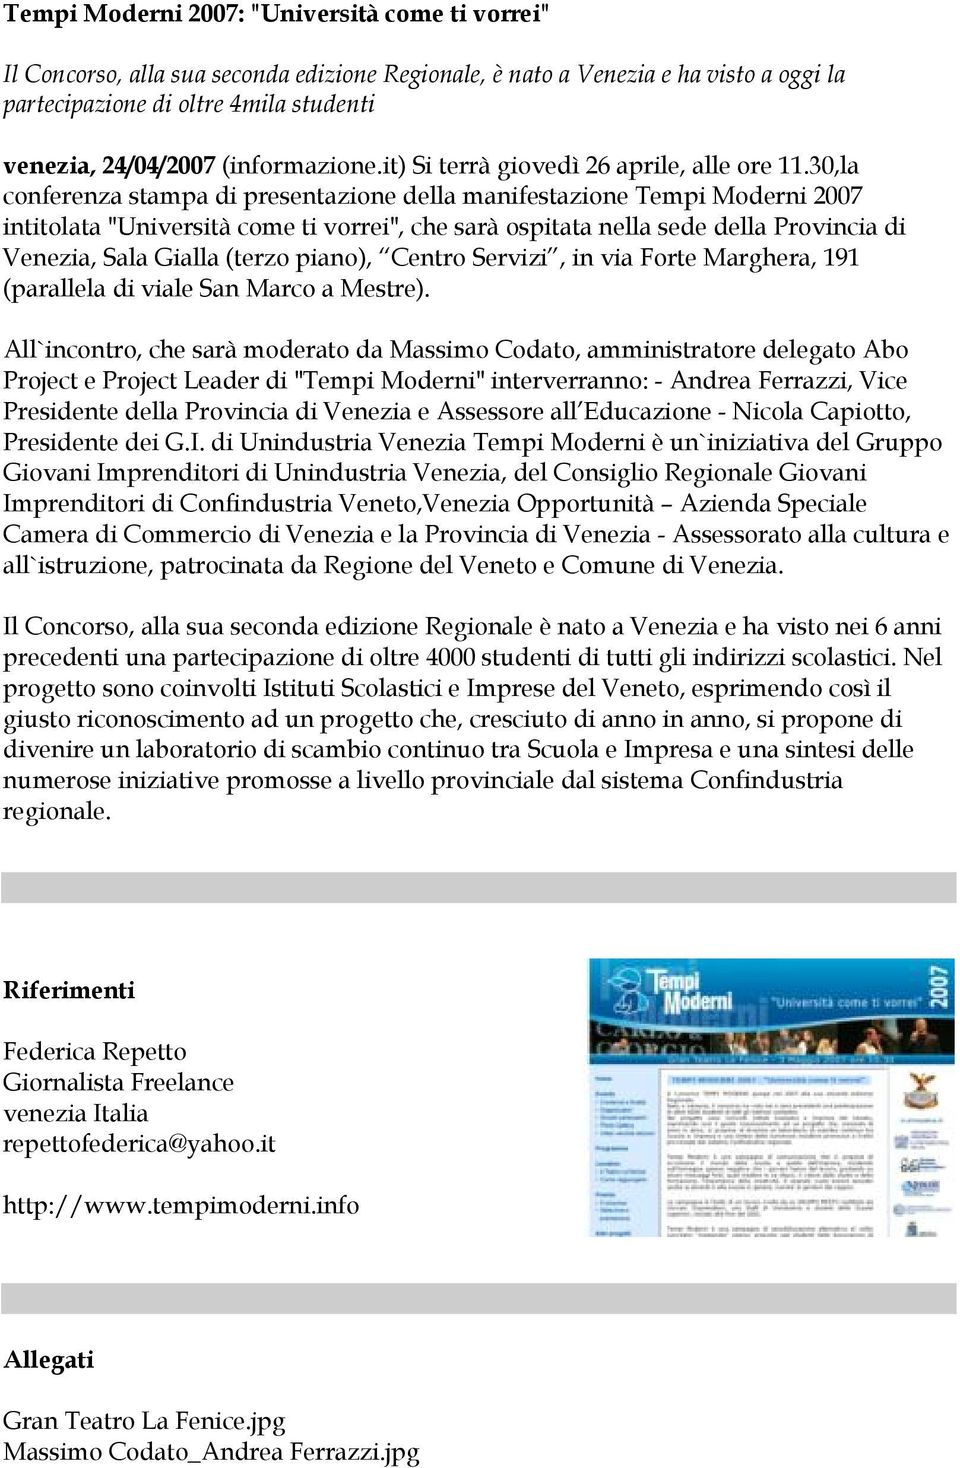 30,la conferenza stampa di presentazione della manifestazione Tempi Moderni 2007 intitolata "Università come ti vorrei", che sarà ospitata nella sede della Provincia di Venezia, Sala Gialla (terzo